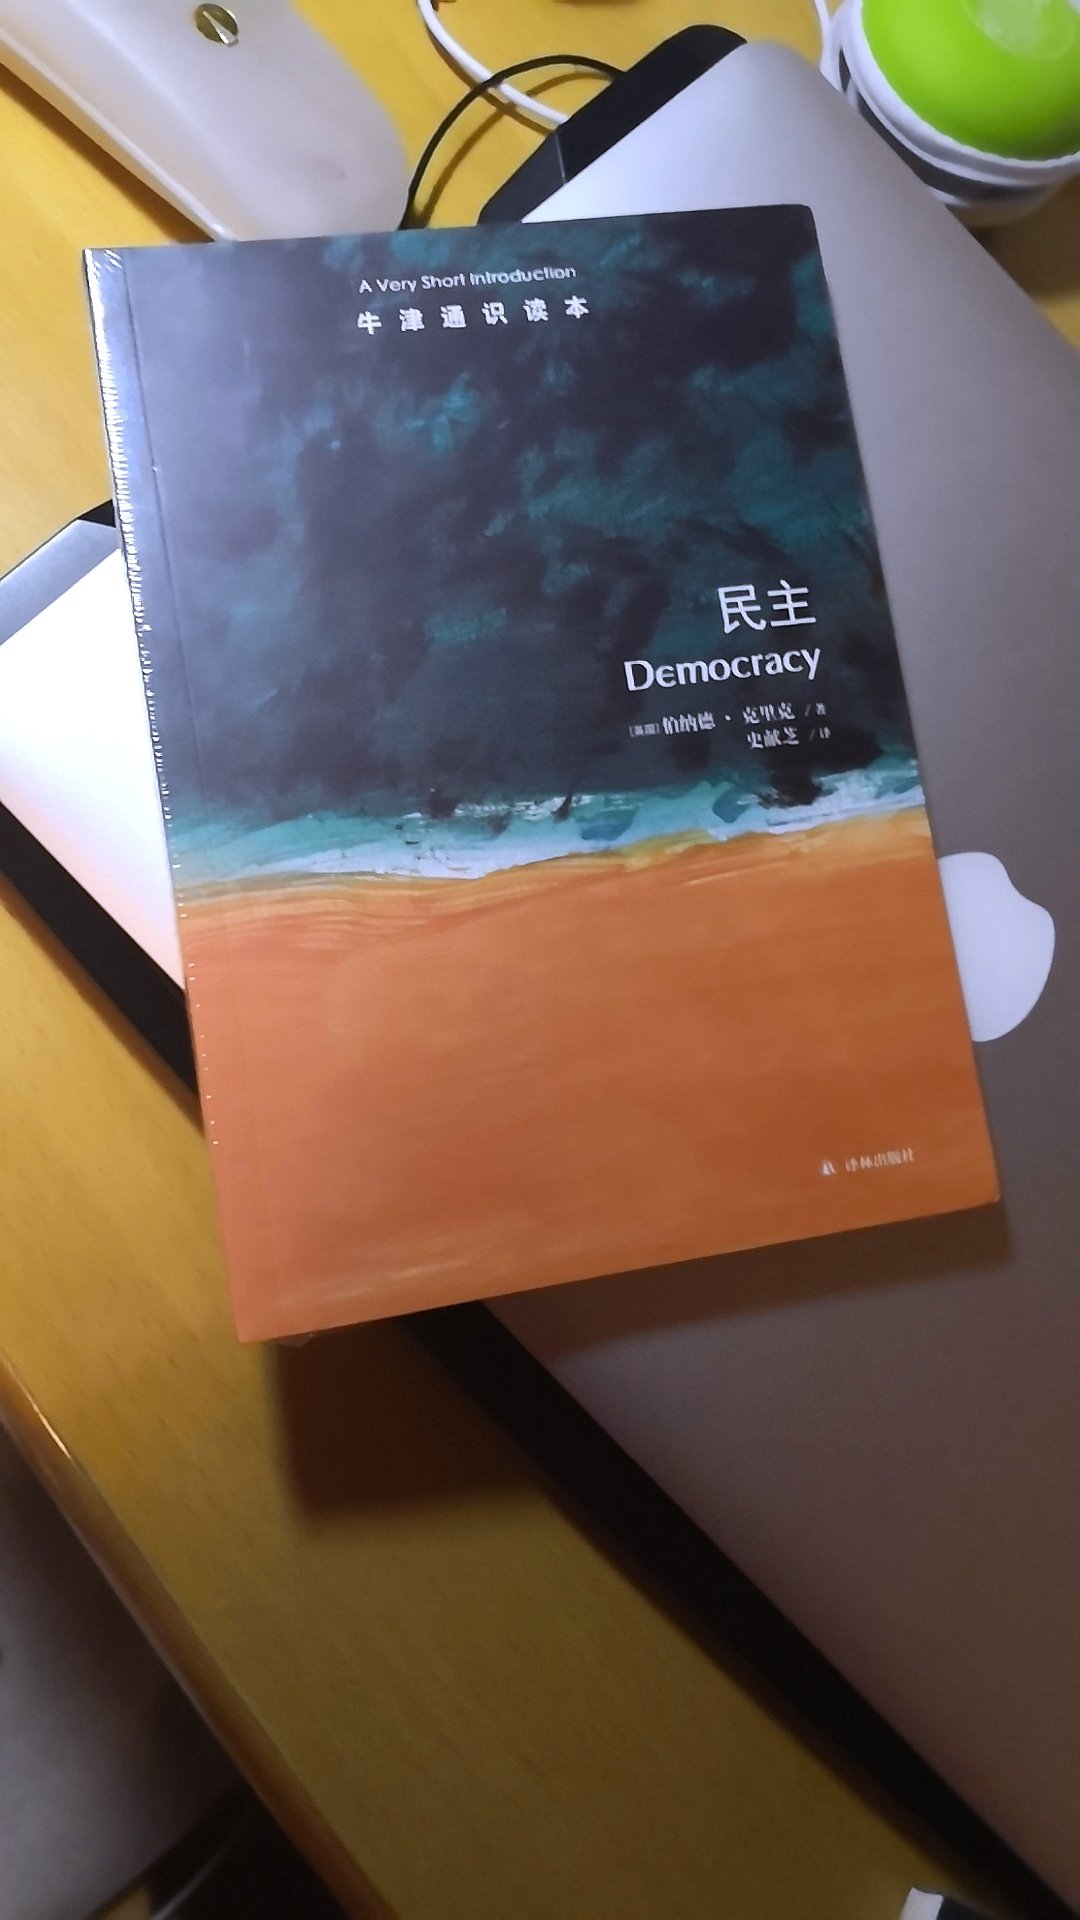 牛津通识读本很好。了解一下什么是民主。